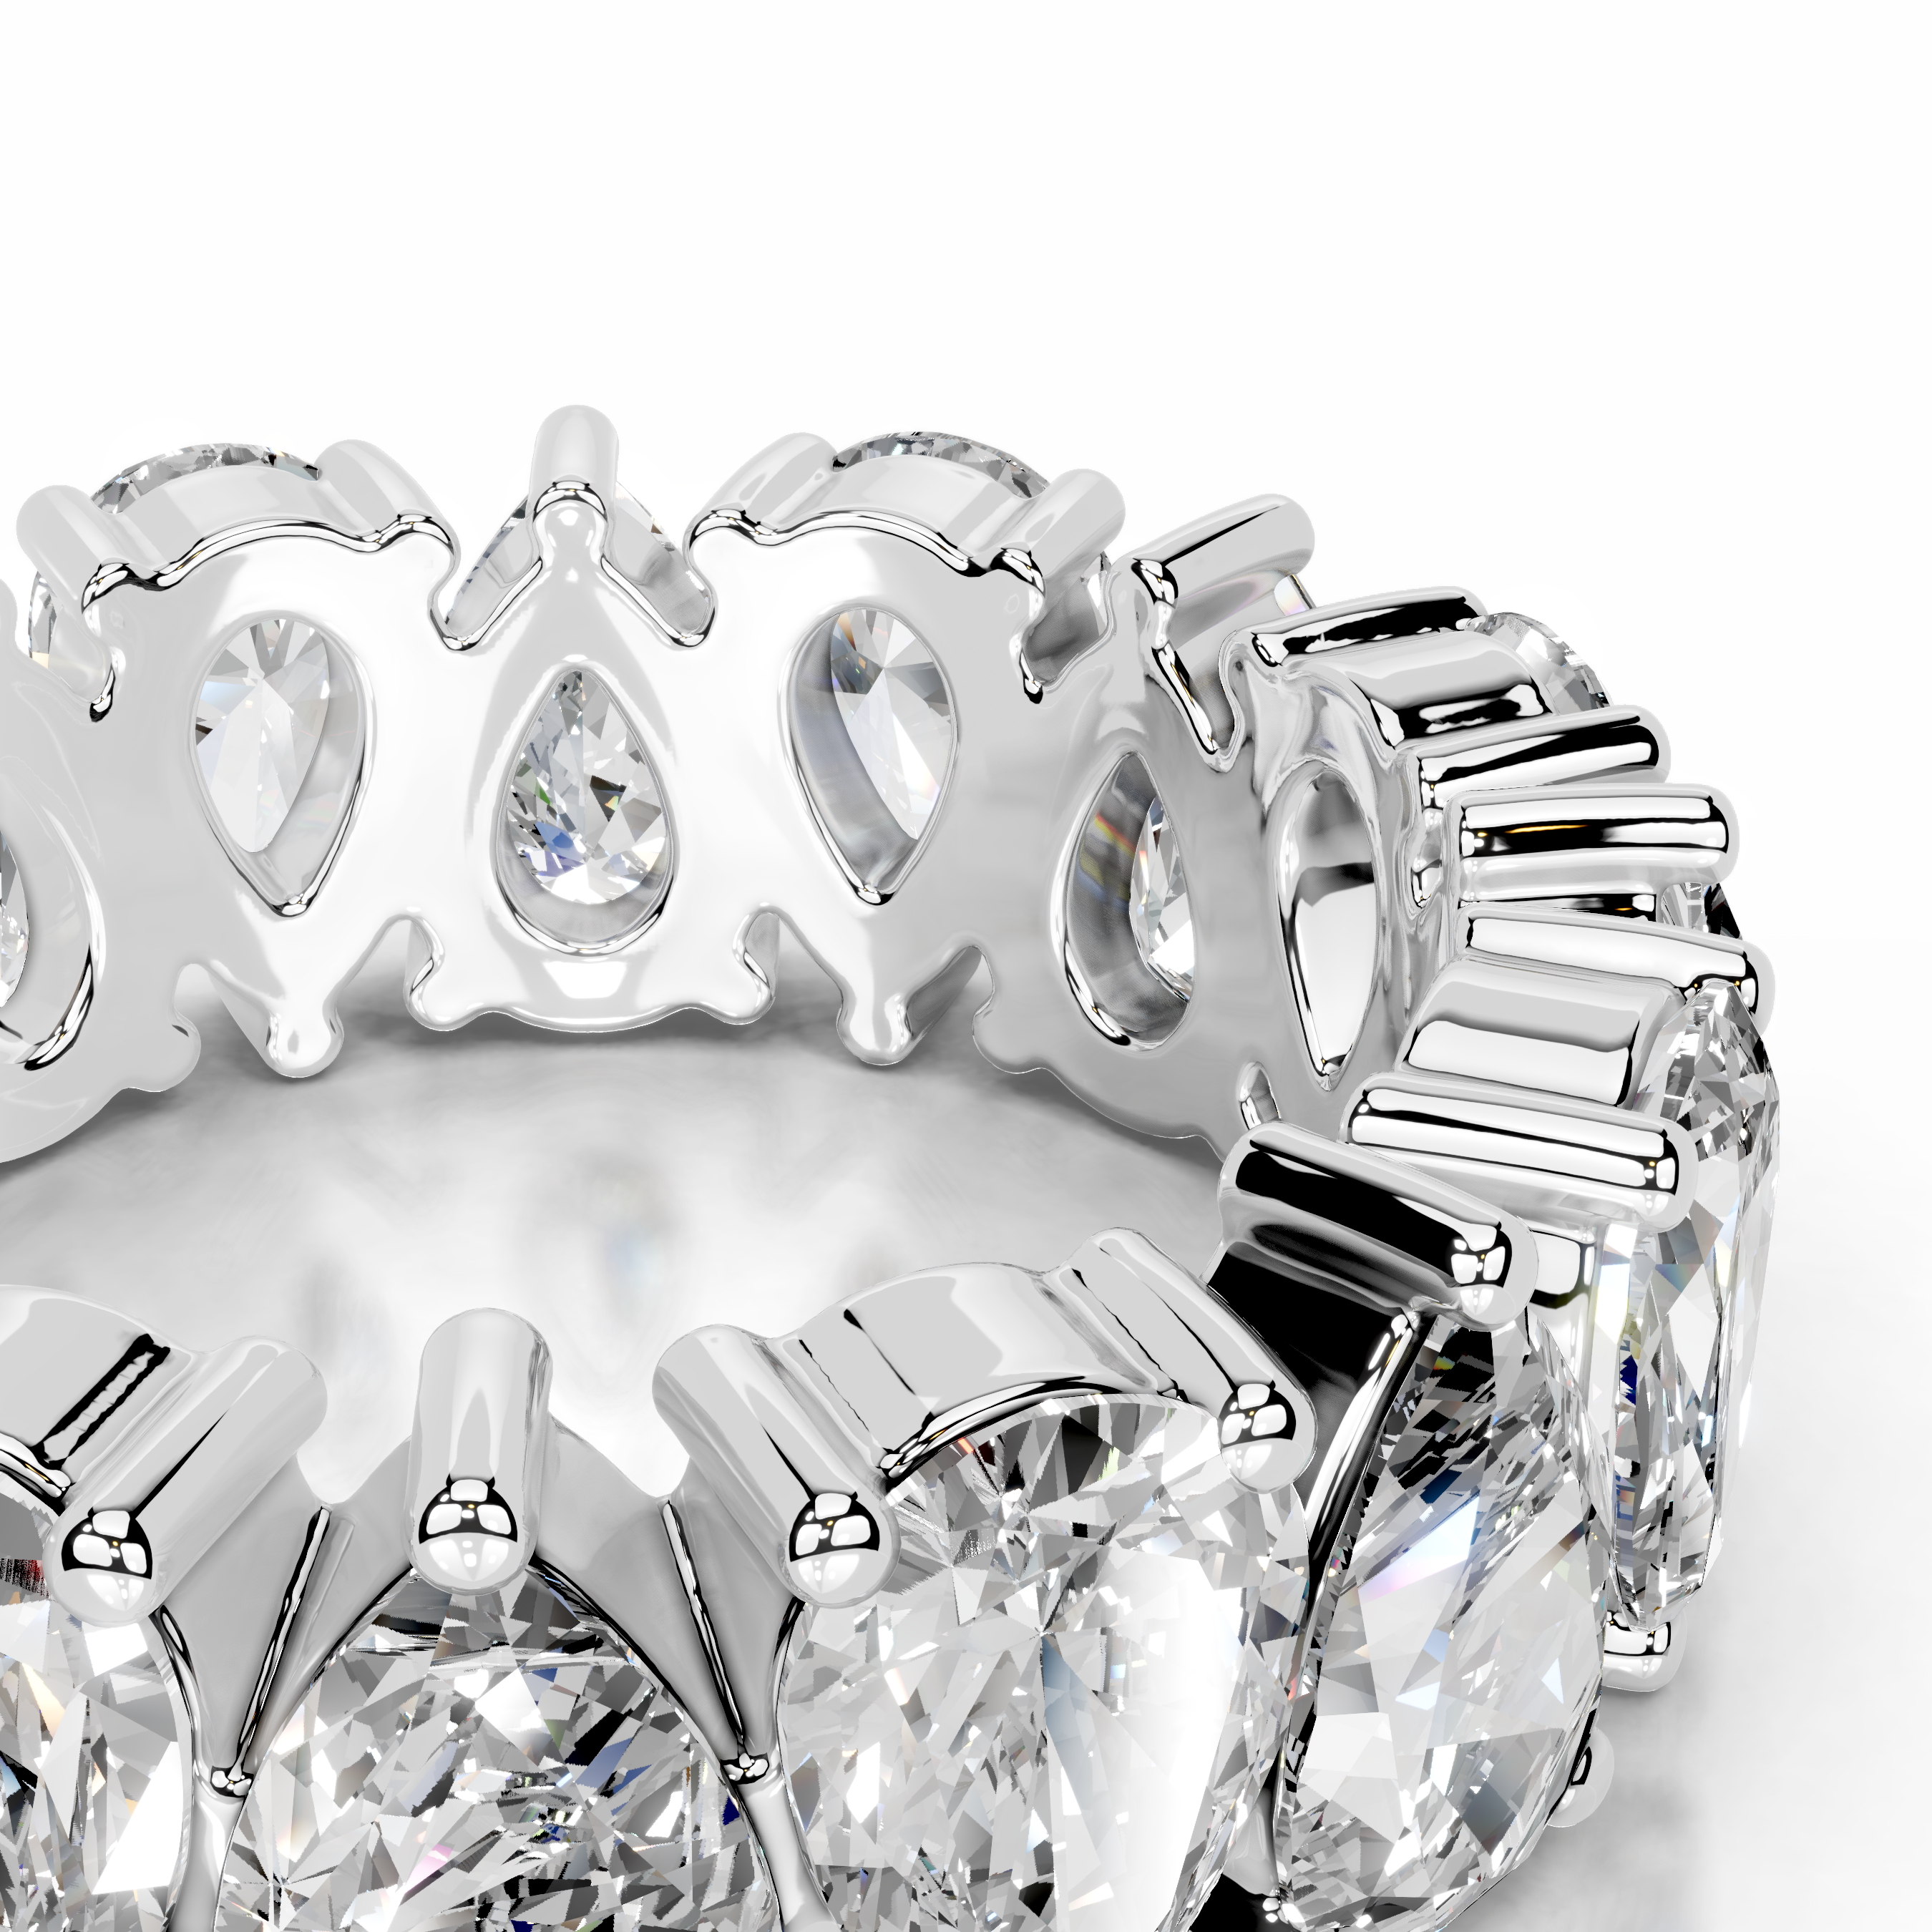 Sarah Diamond Wedding Ring   (6 Carat) -14K White Gold